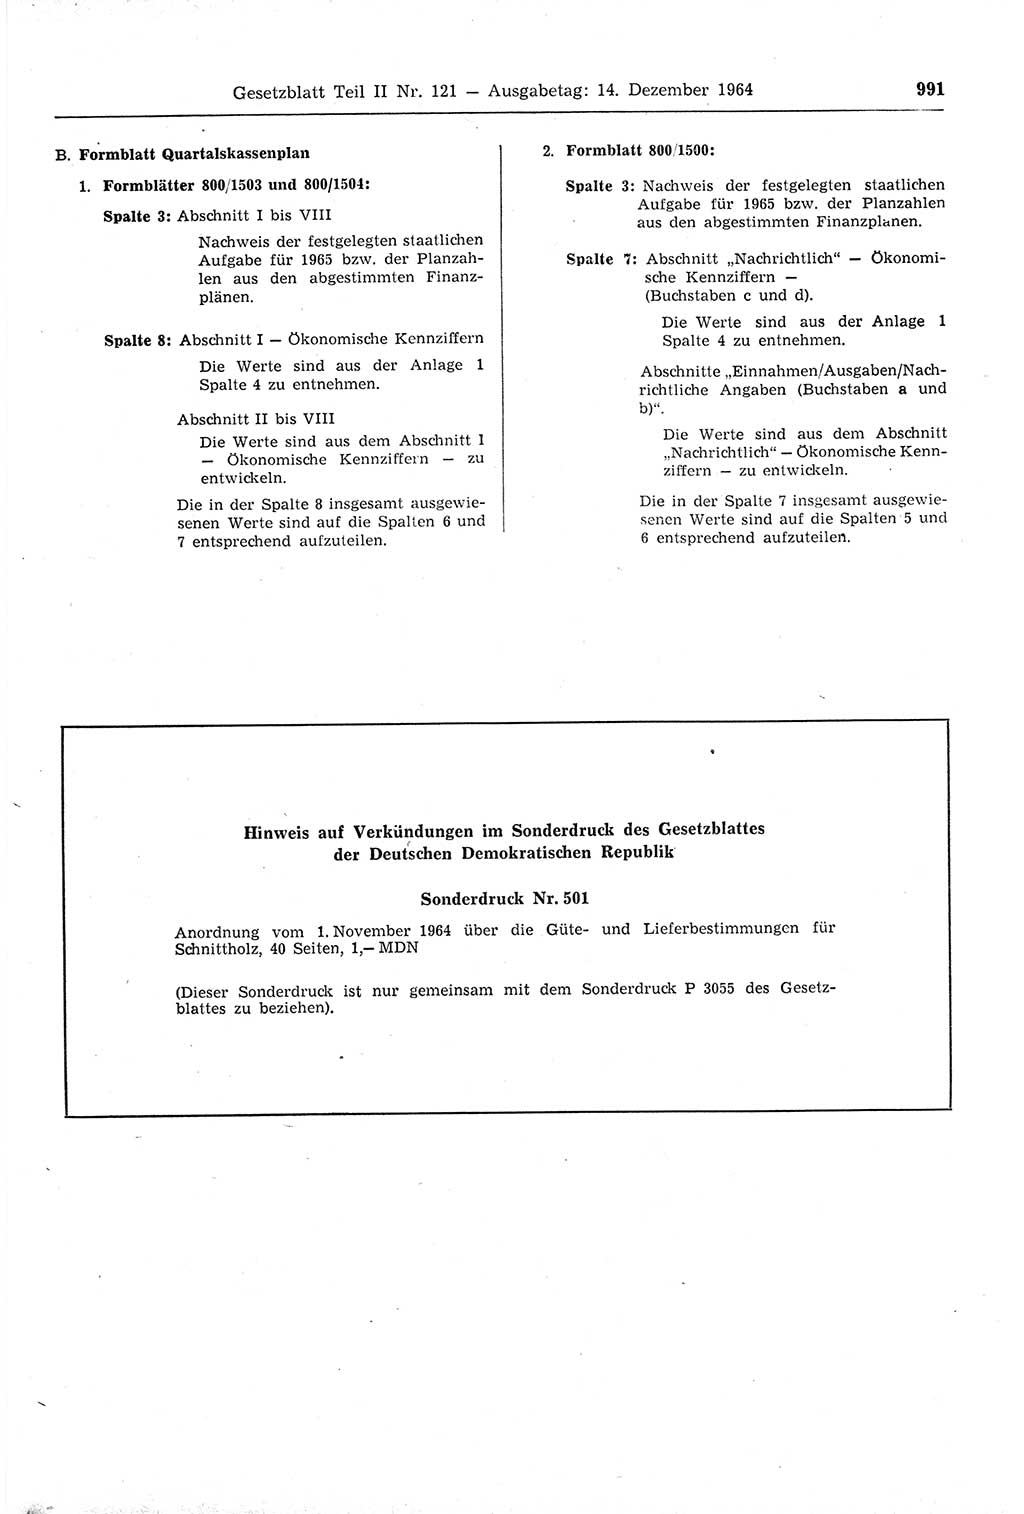 Gesetzblatt (GBl.) der Deutschen Demokratischen Republik (DDR) Teil ⅠⅠ 1964, Seite 991 (GBl. DDR ⅠⅠ 1964, S. 991)